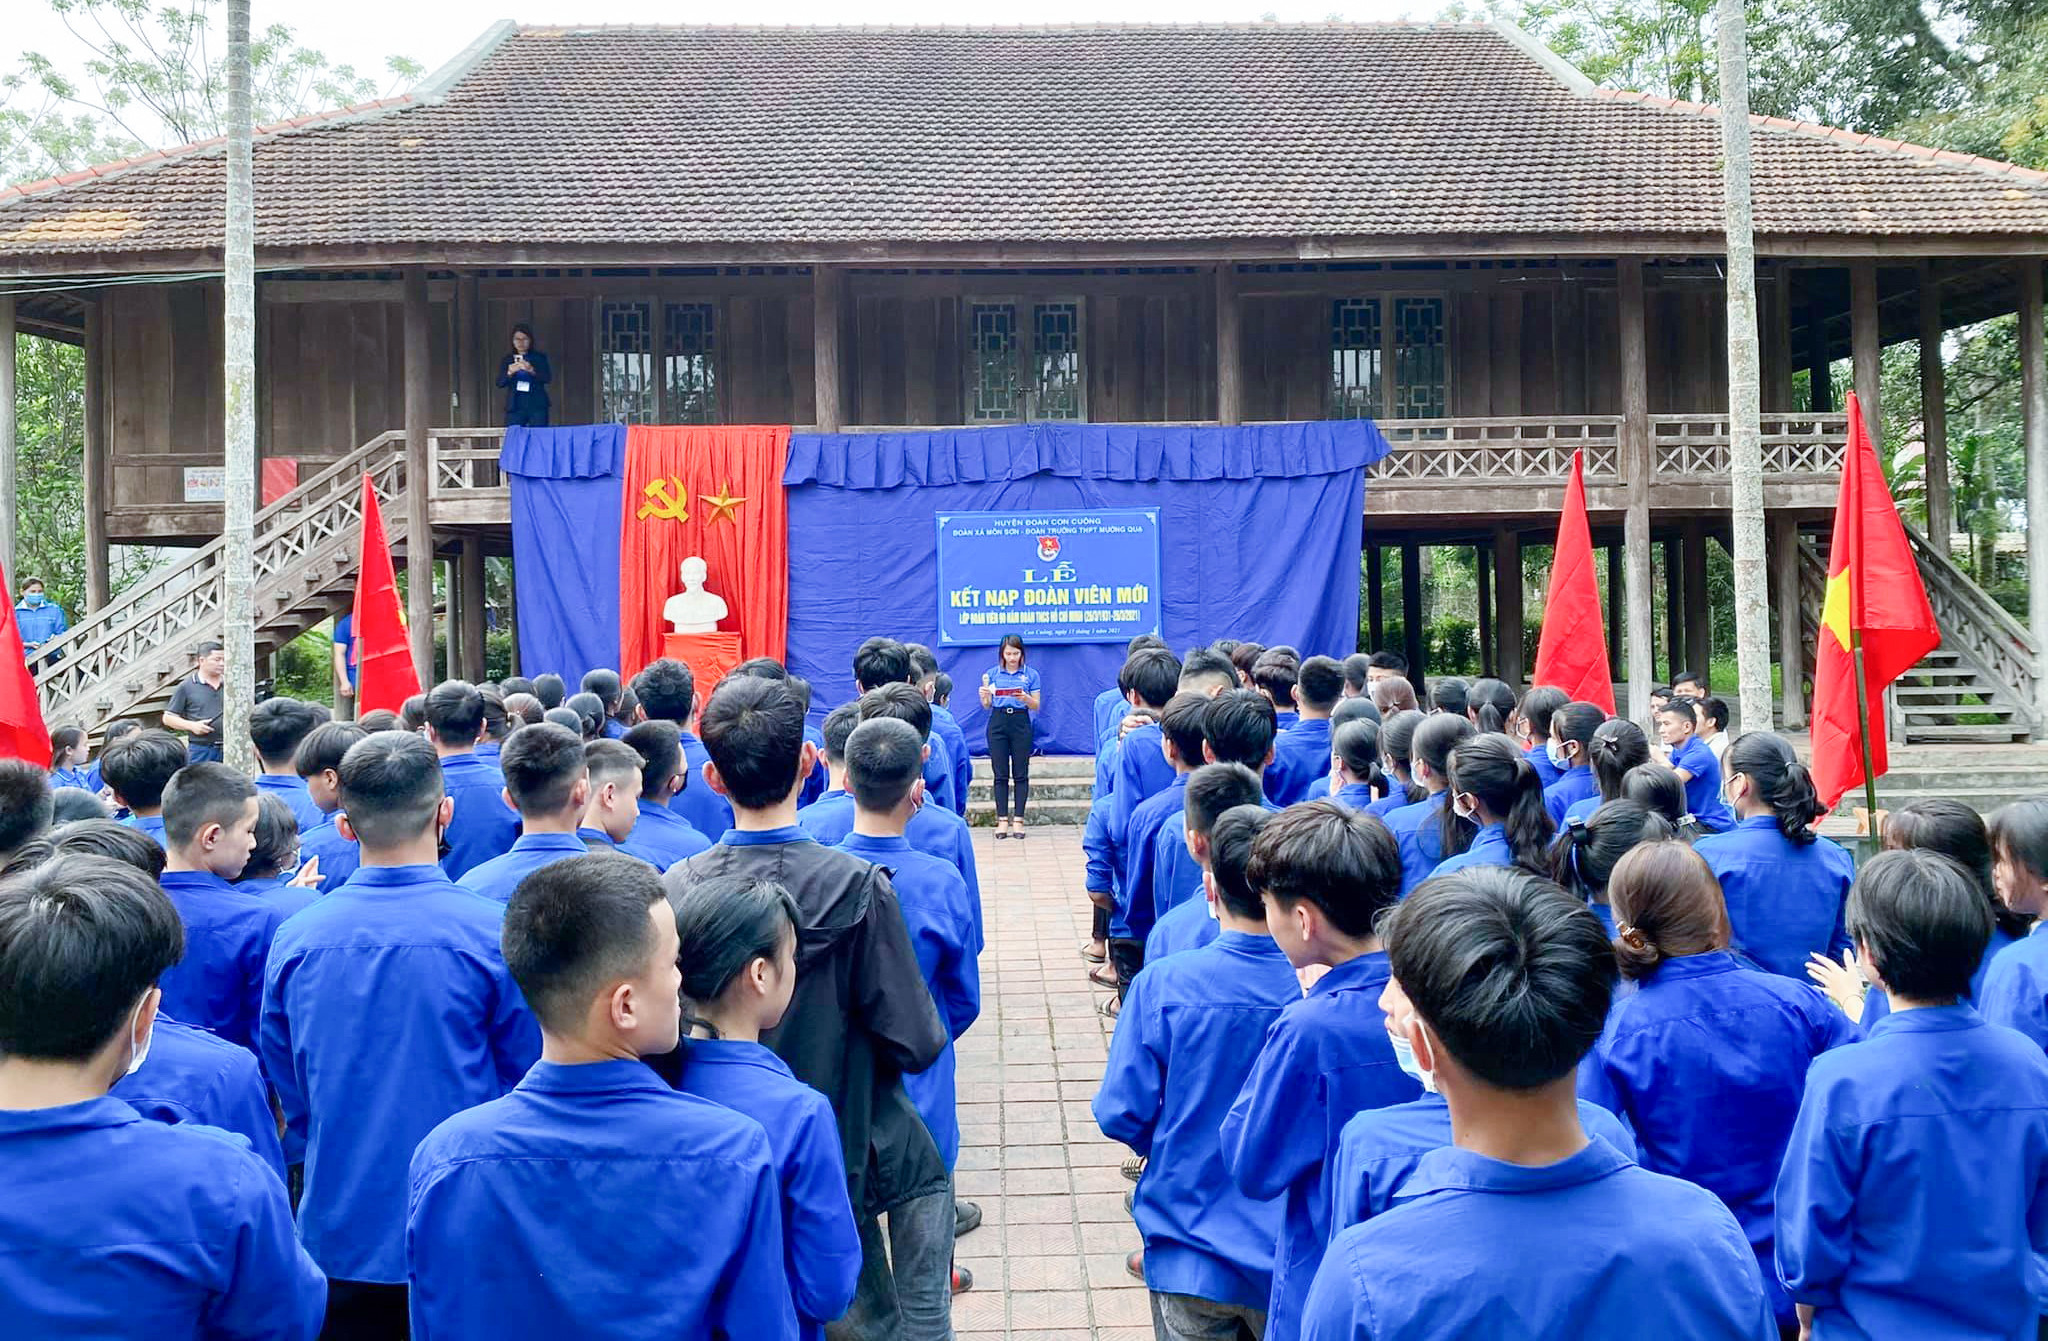 bna_ MH Tăng cường các hoạt động ngoại khoá tại địa chỉ _đỏ_ cho học sinh trung học phổ thông ở huyện Con Cuông.jpg